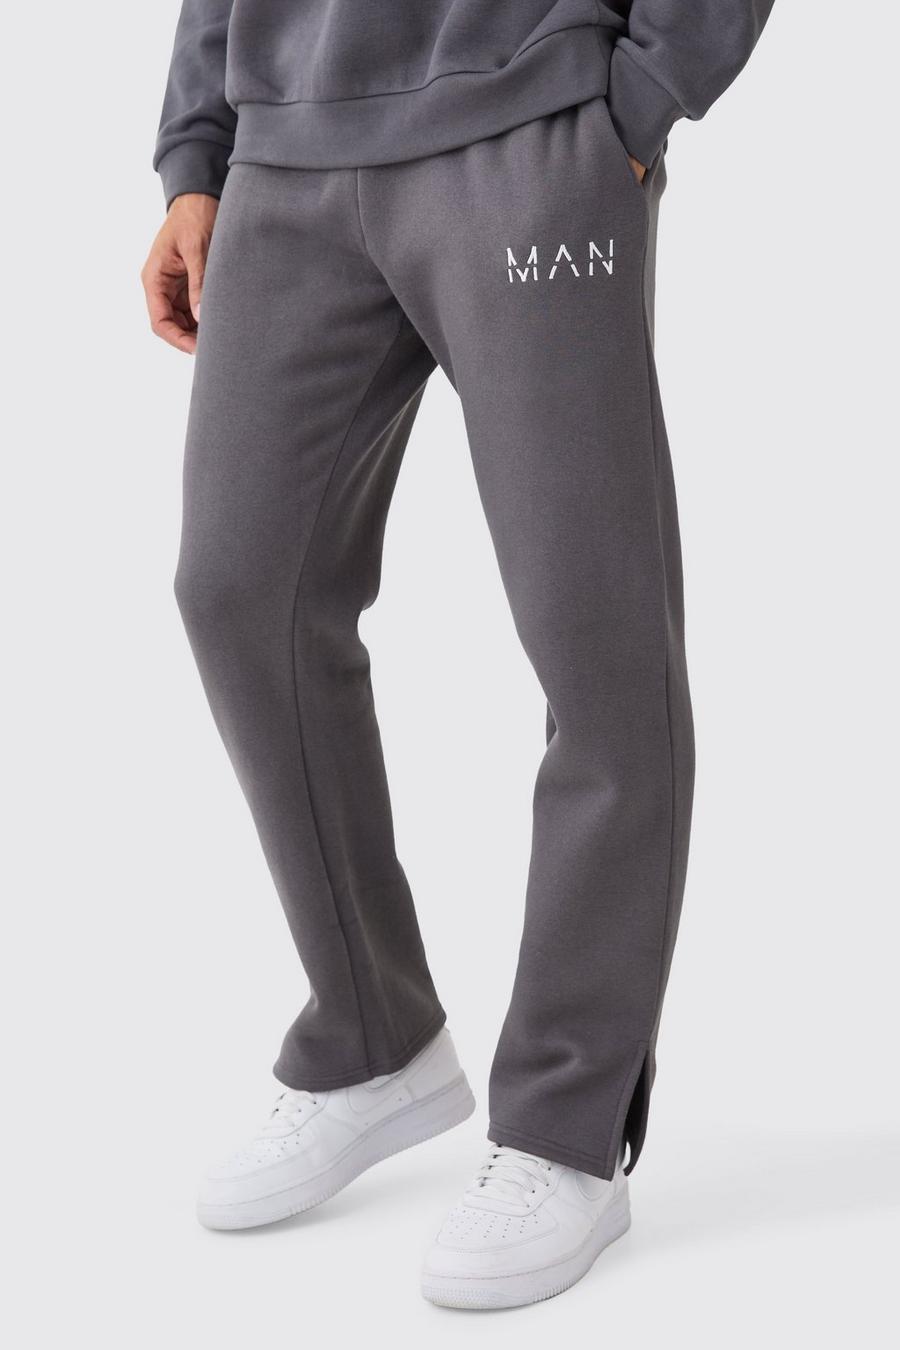 Pantalón deportivo MAN con abertura en el bajo, Charcoal